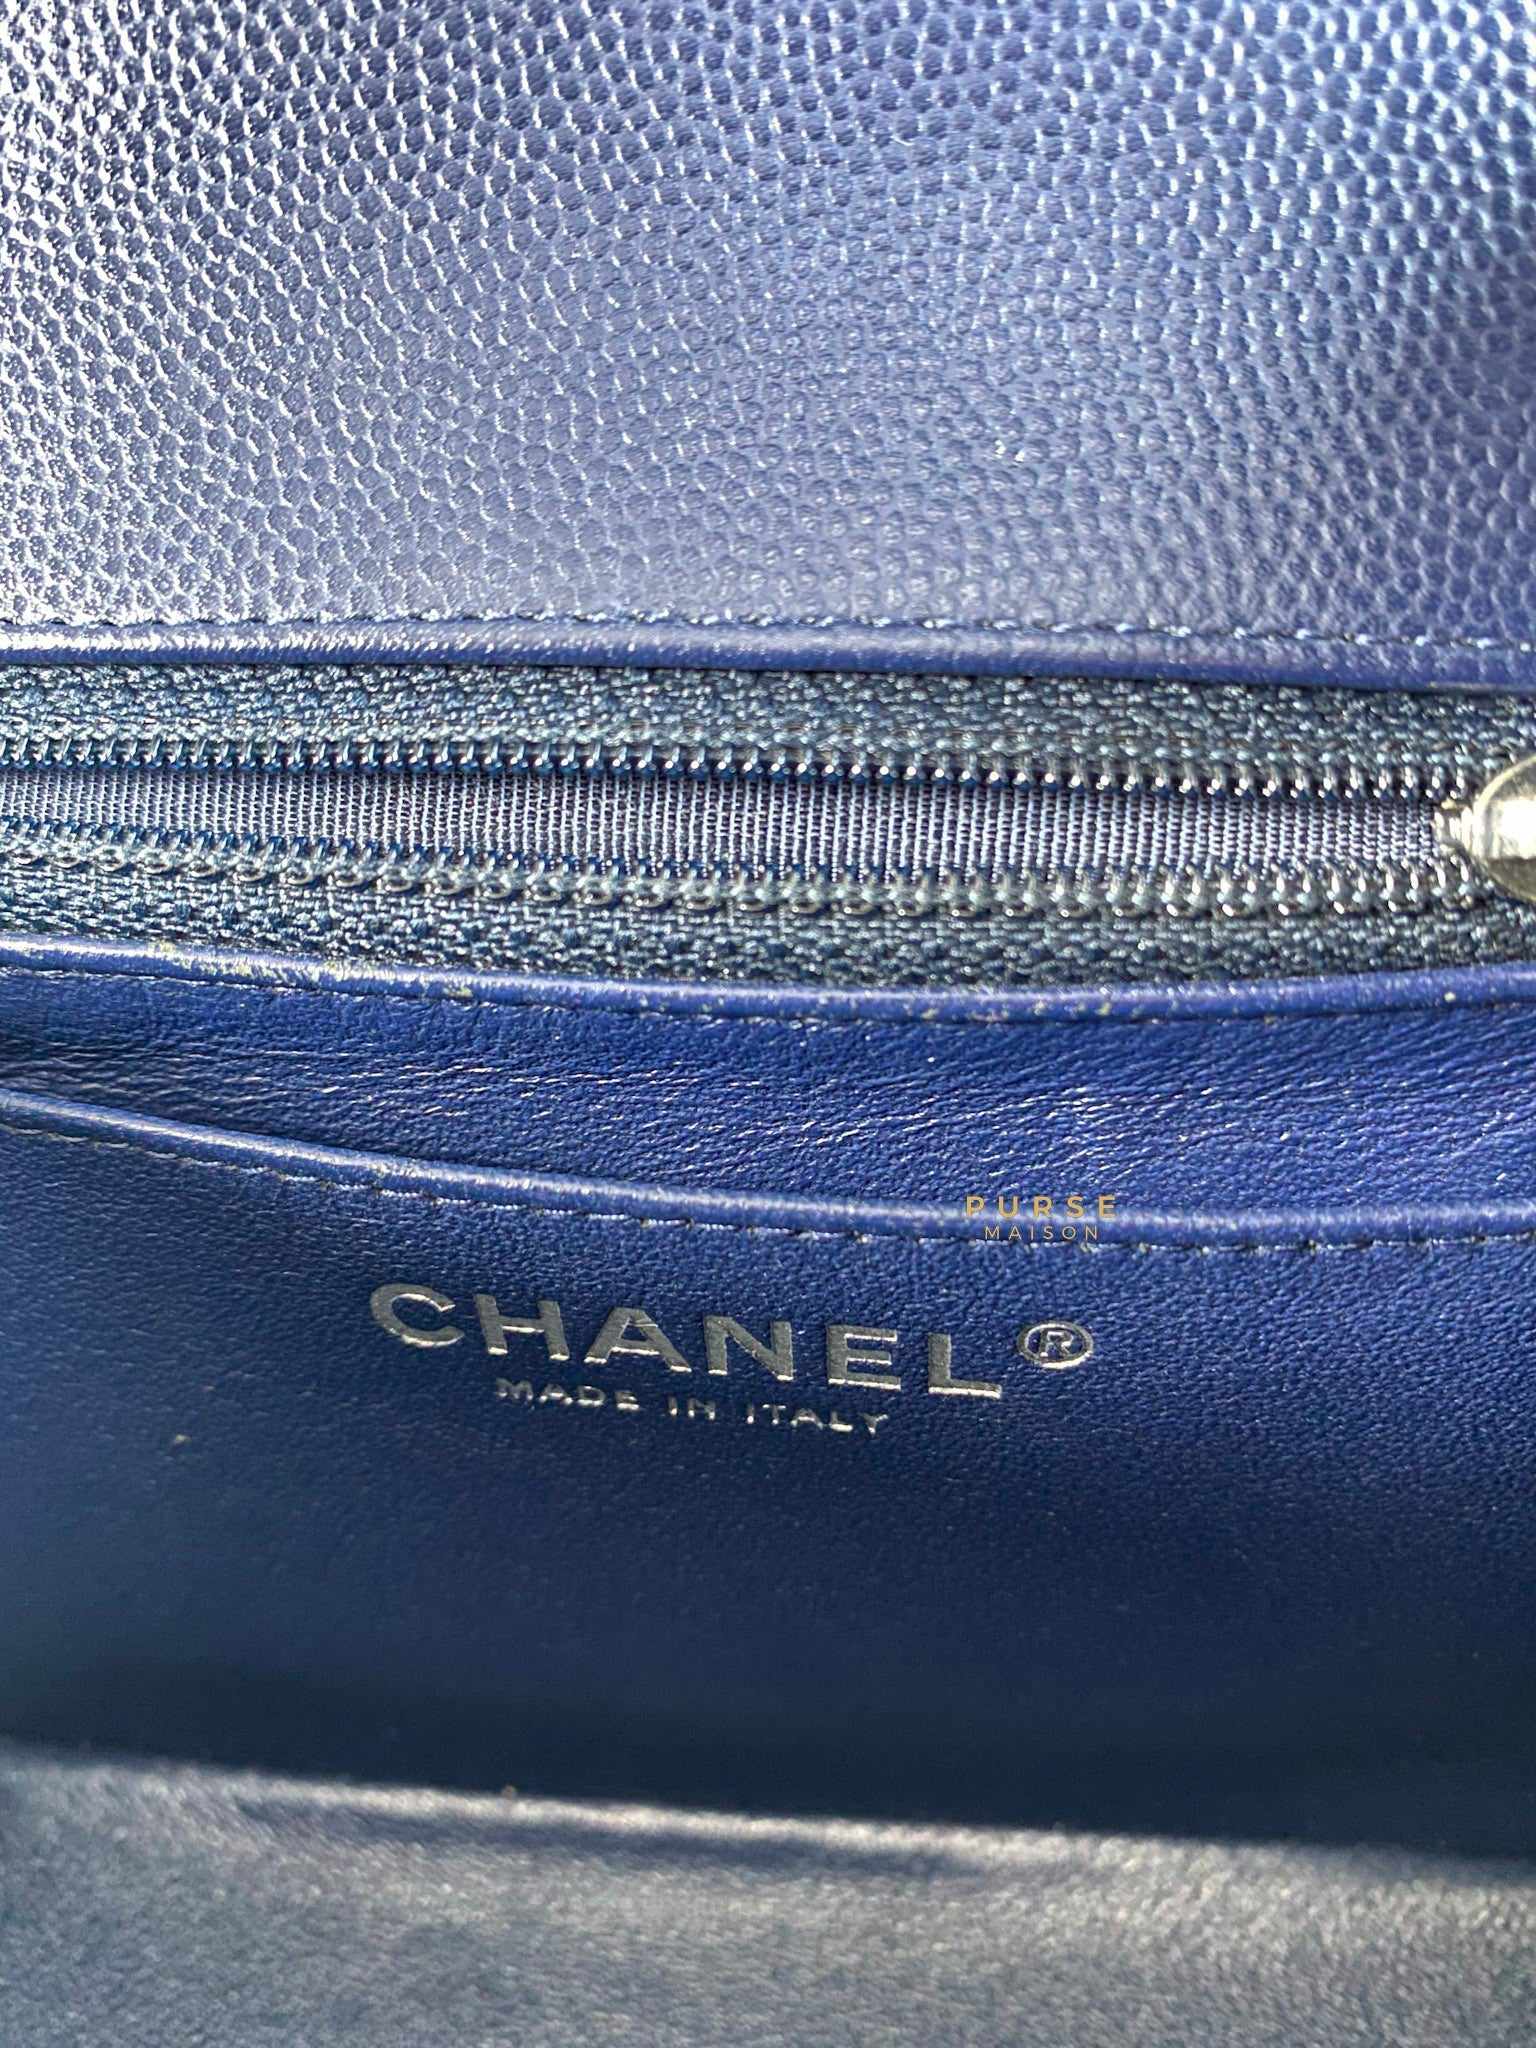 Chanel Mini Square Dark Blue Chevron Caviar and Silver Hardware (Series 22)